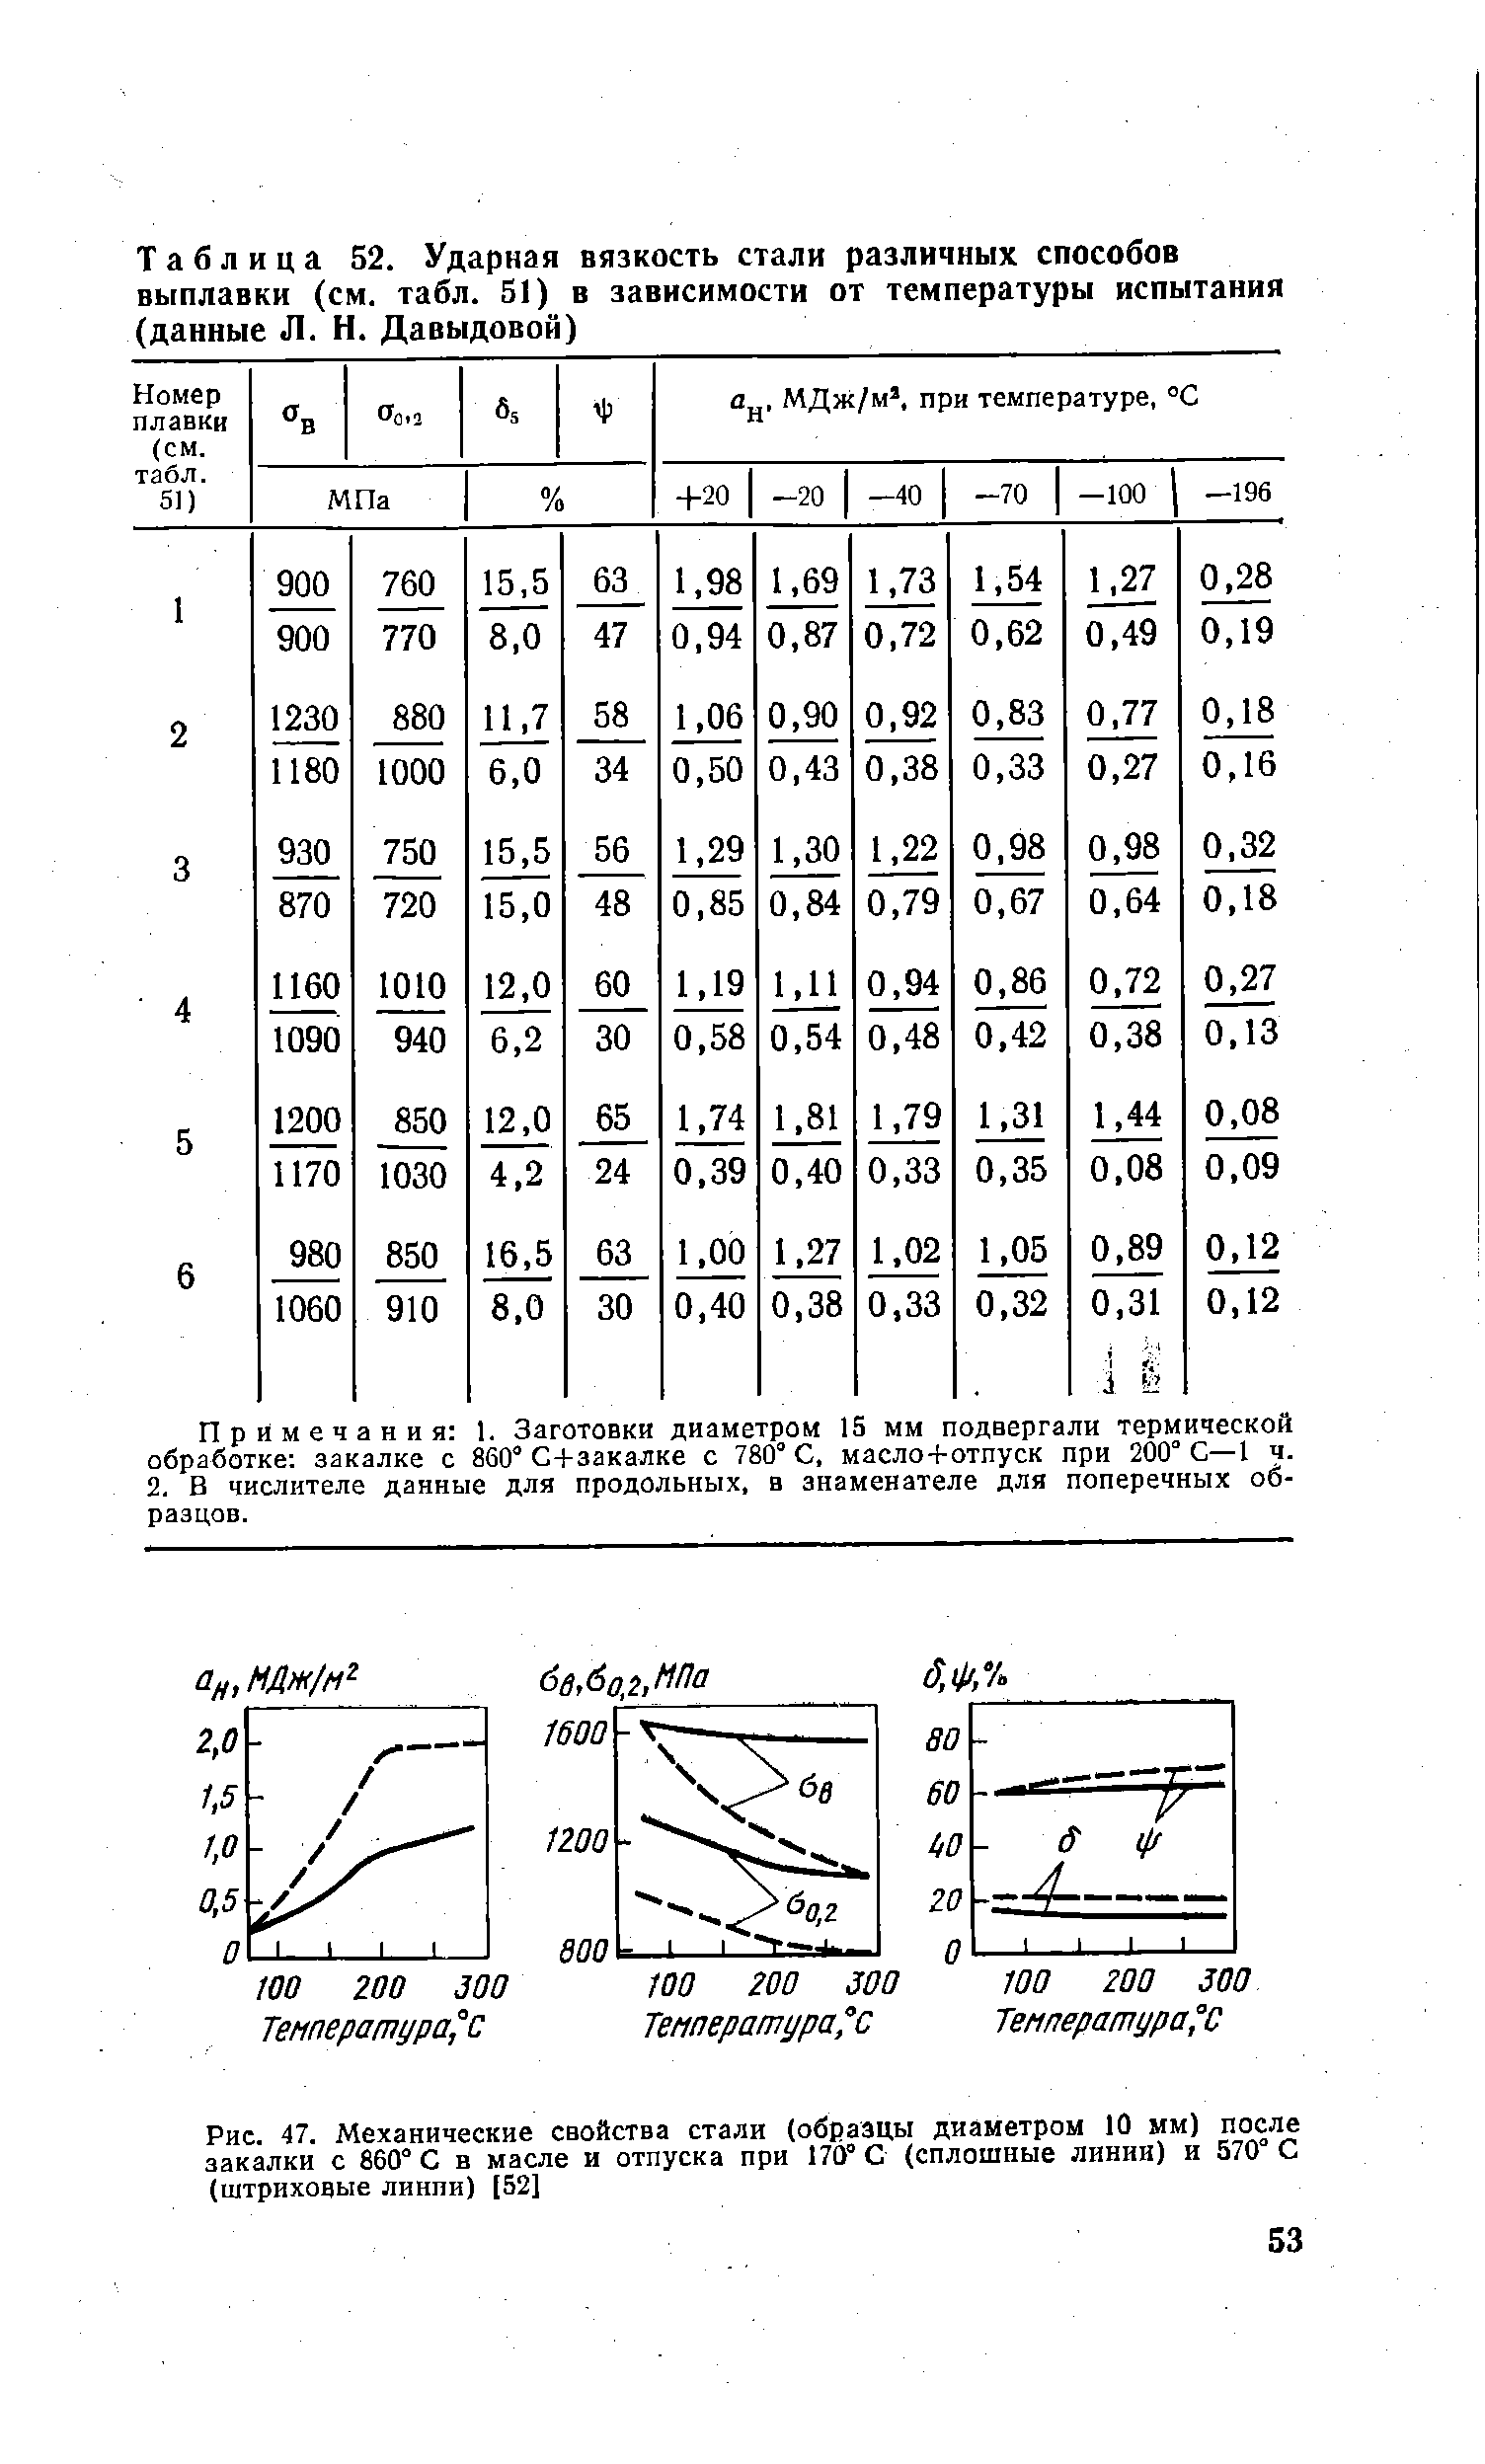 Таблица 52. Ударная вязкость стали различных способов выплавки (см. табл. 51) в зависимости от температуры испытания (данные Л. Н. Давыдовой)
